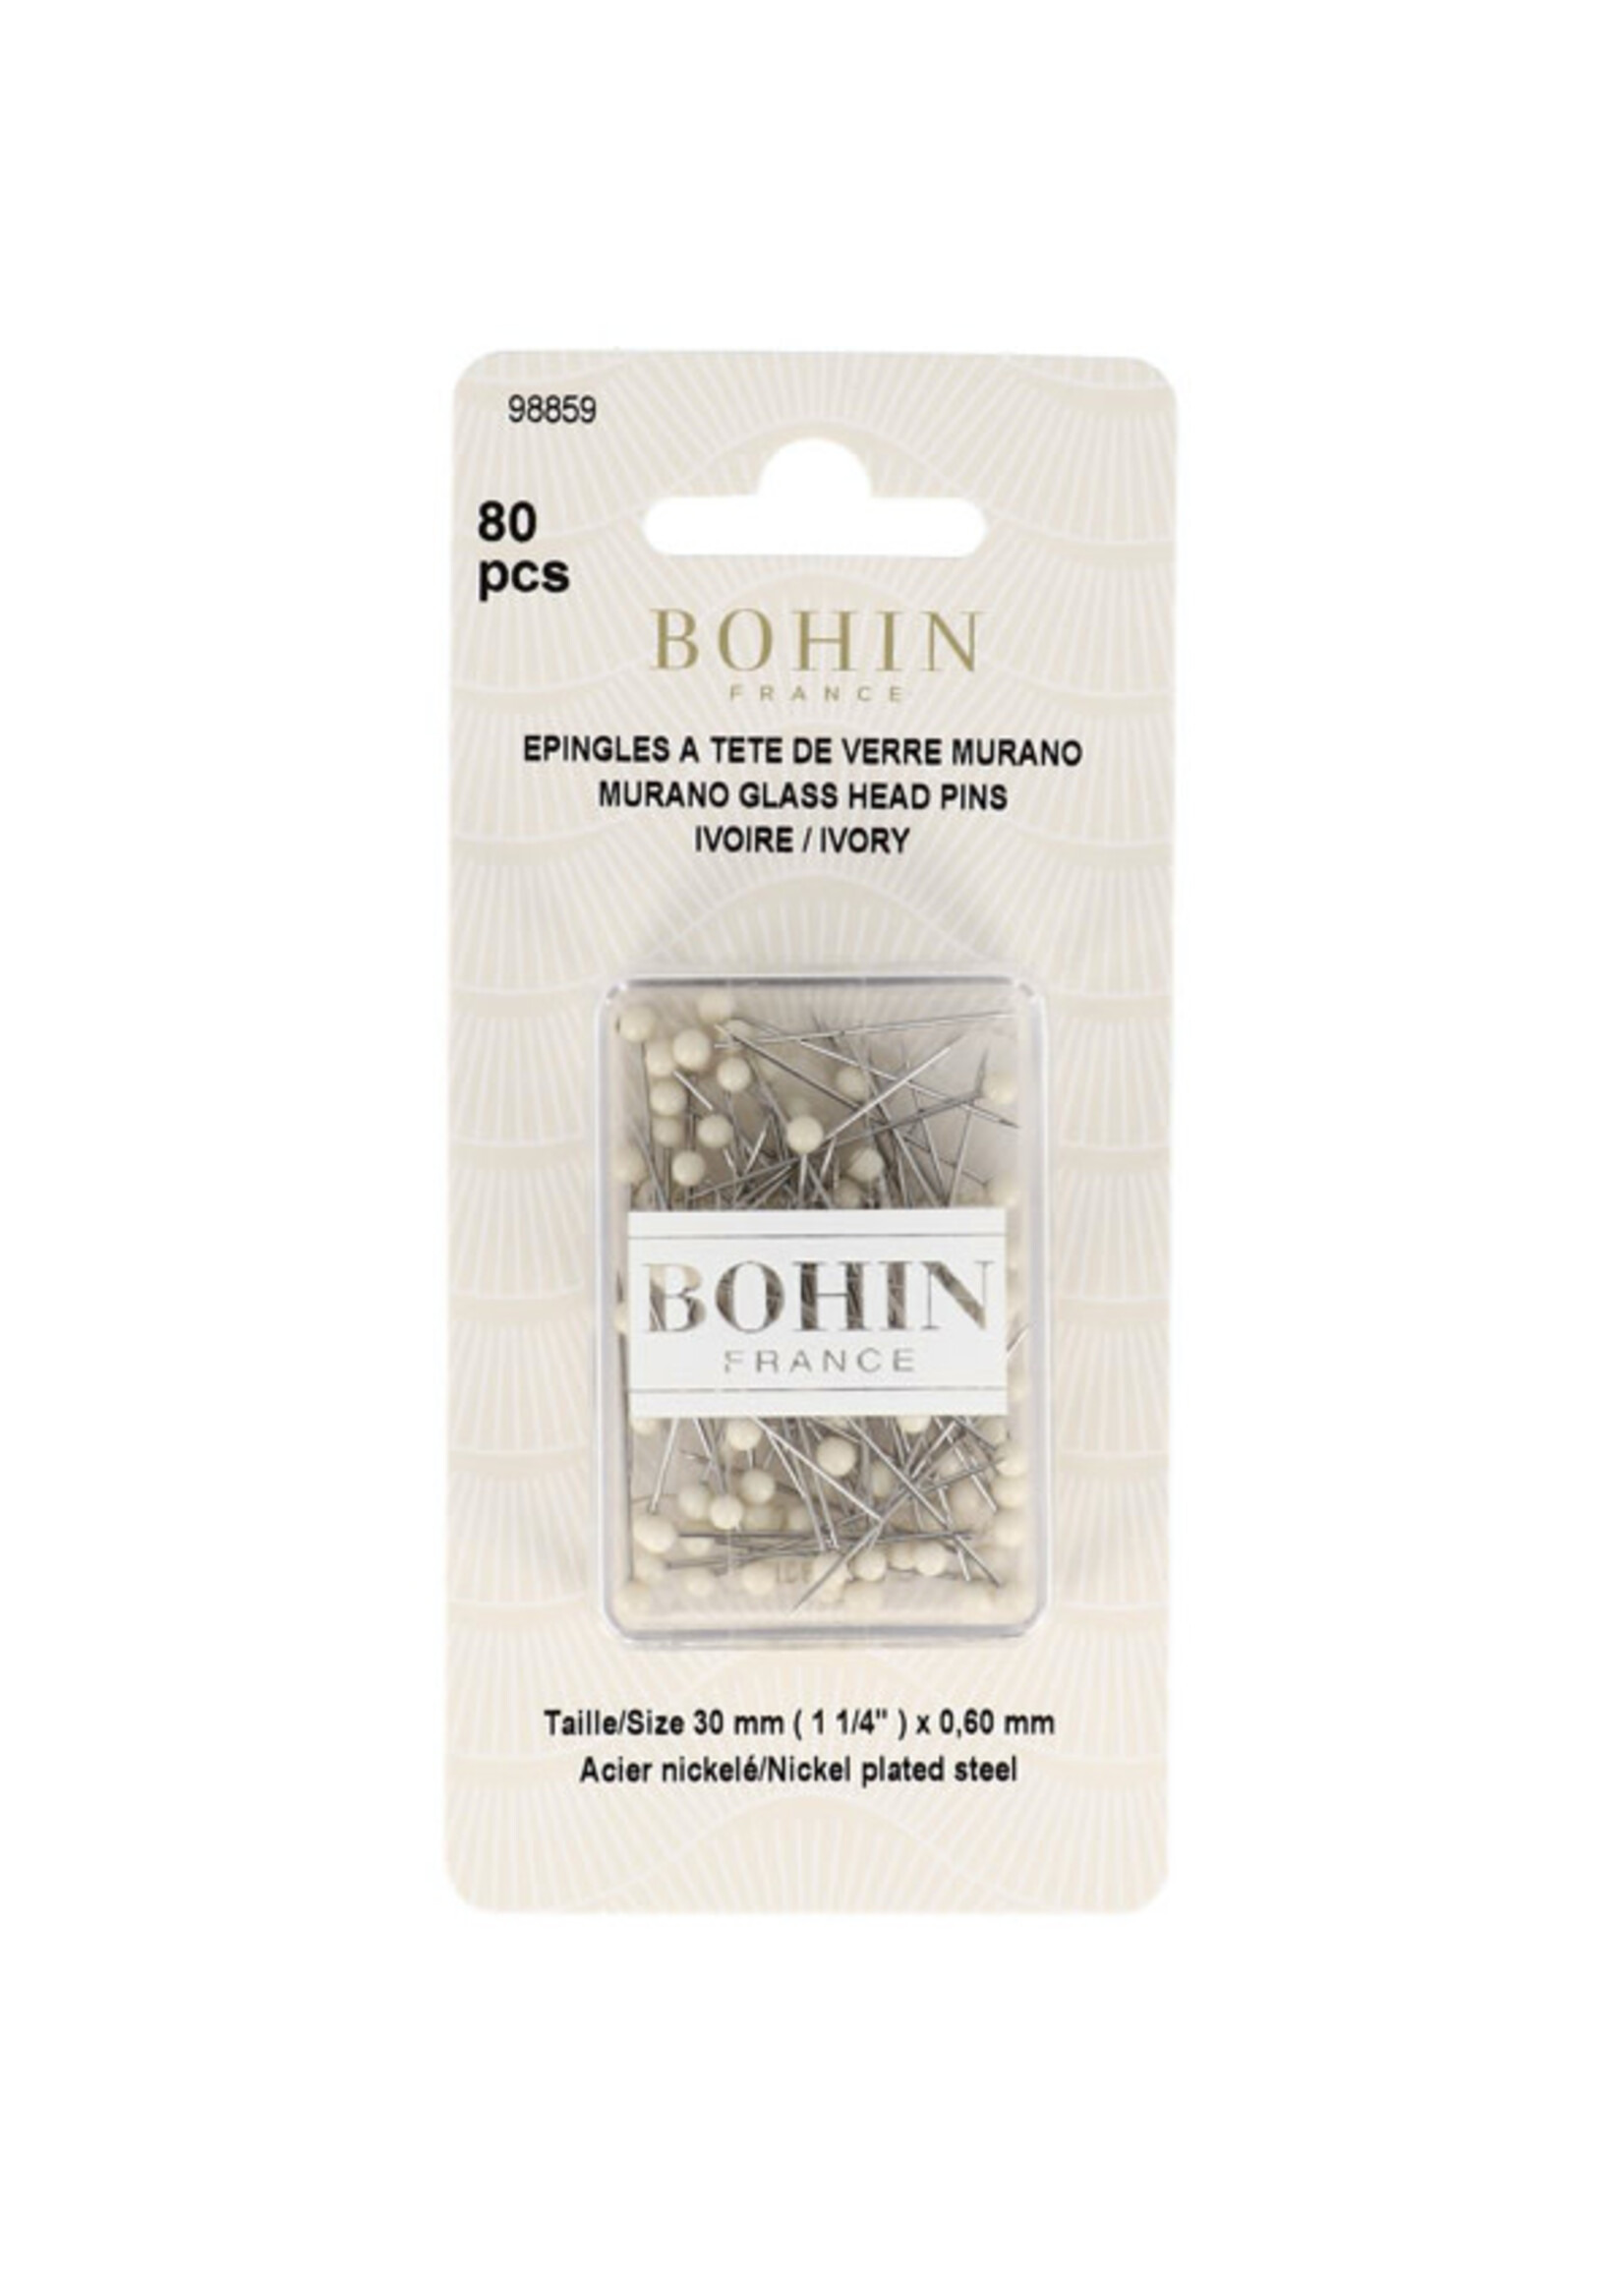 Bohin Murano Glass Head Pins - 30 mm x 0.6 mm - Ivory - 80 stuks